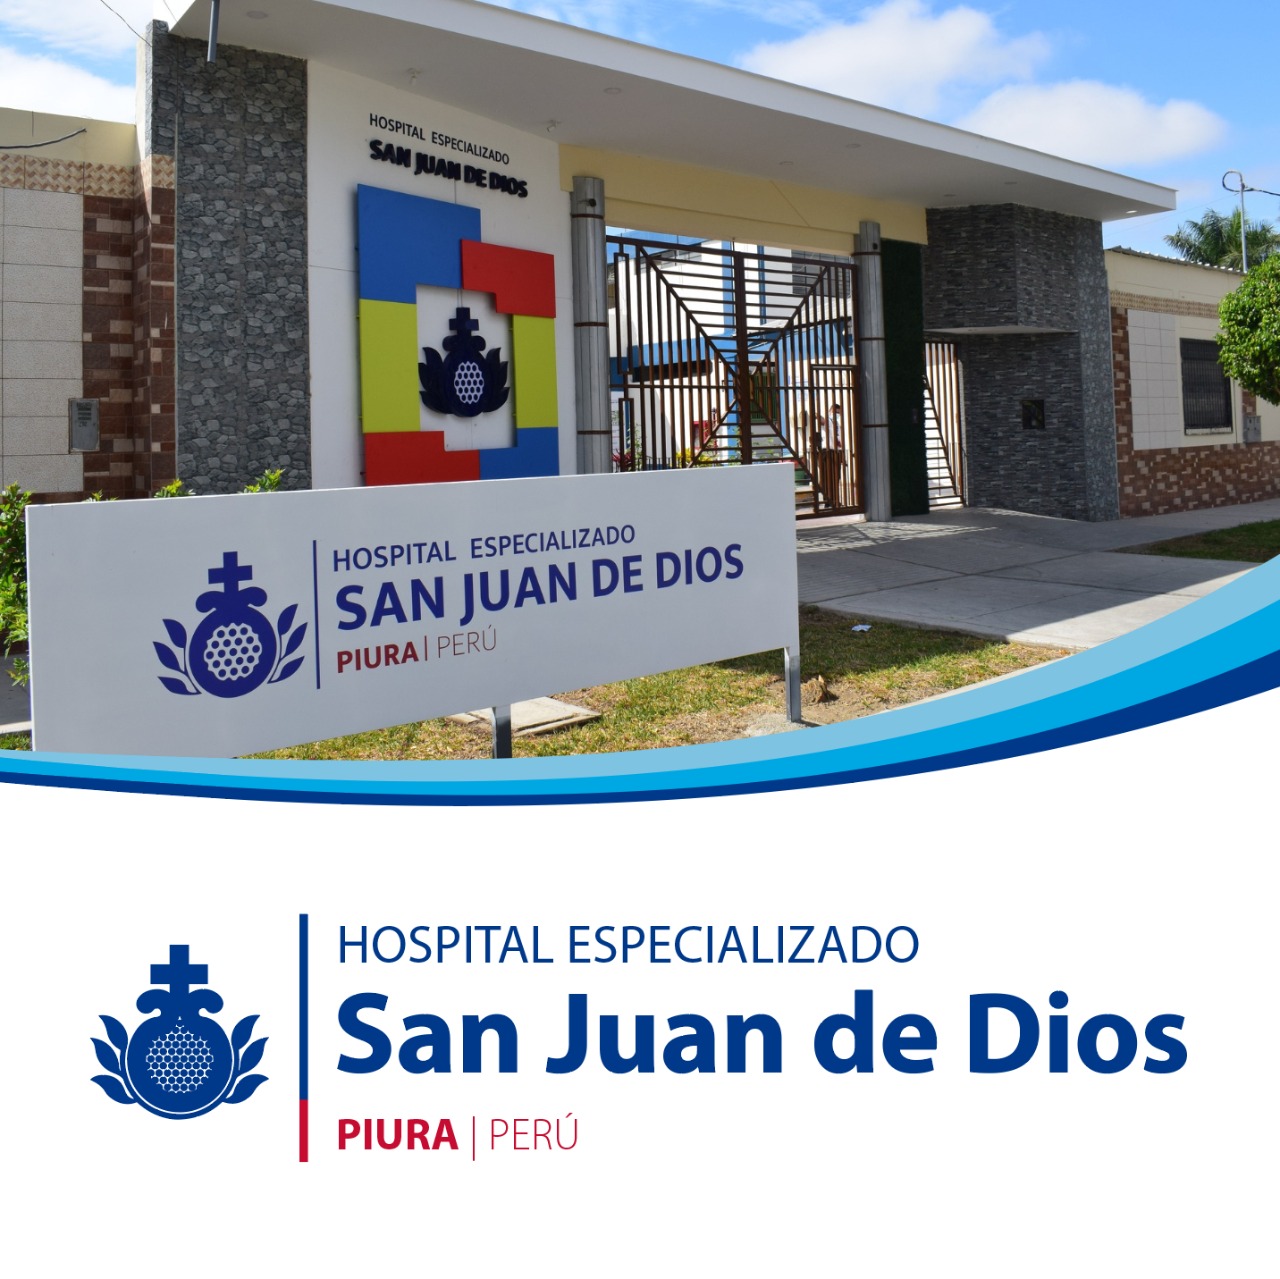 Centro Peru Hospital Especializado San Juan de Dios | Orden Hospitalaria San Juan de Dios